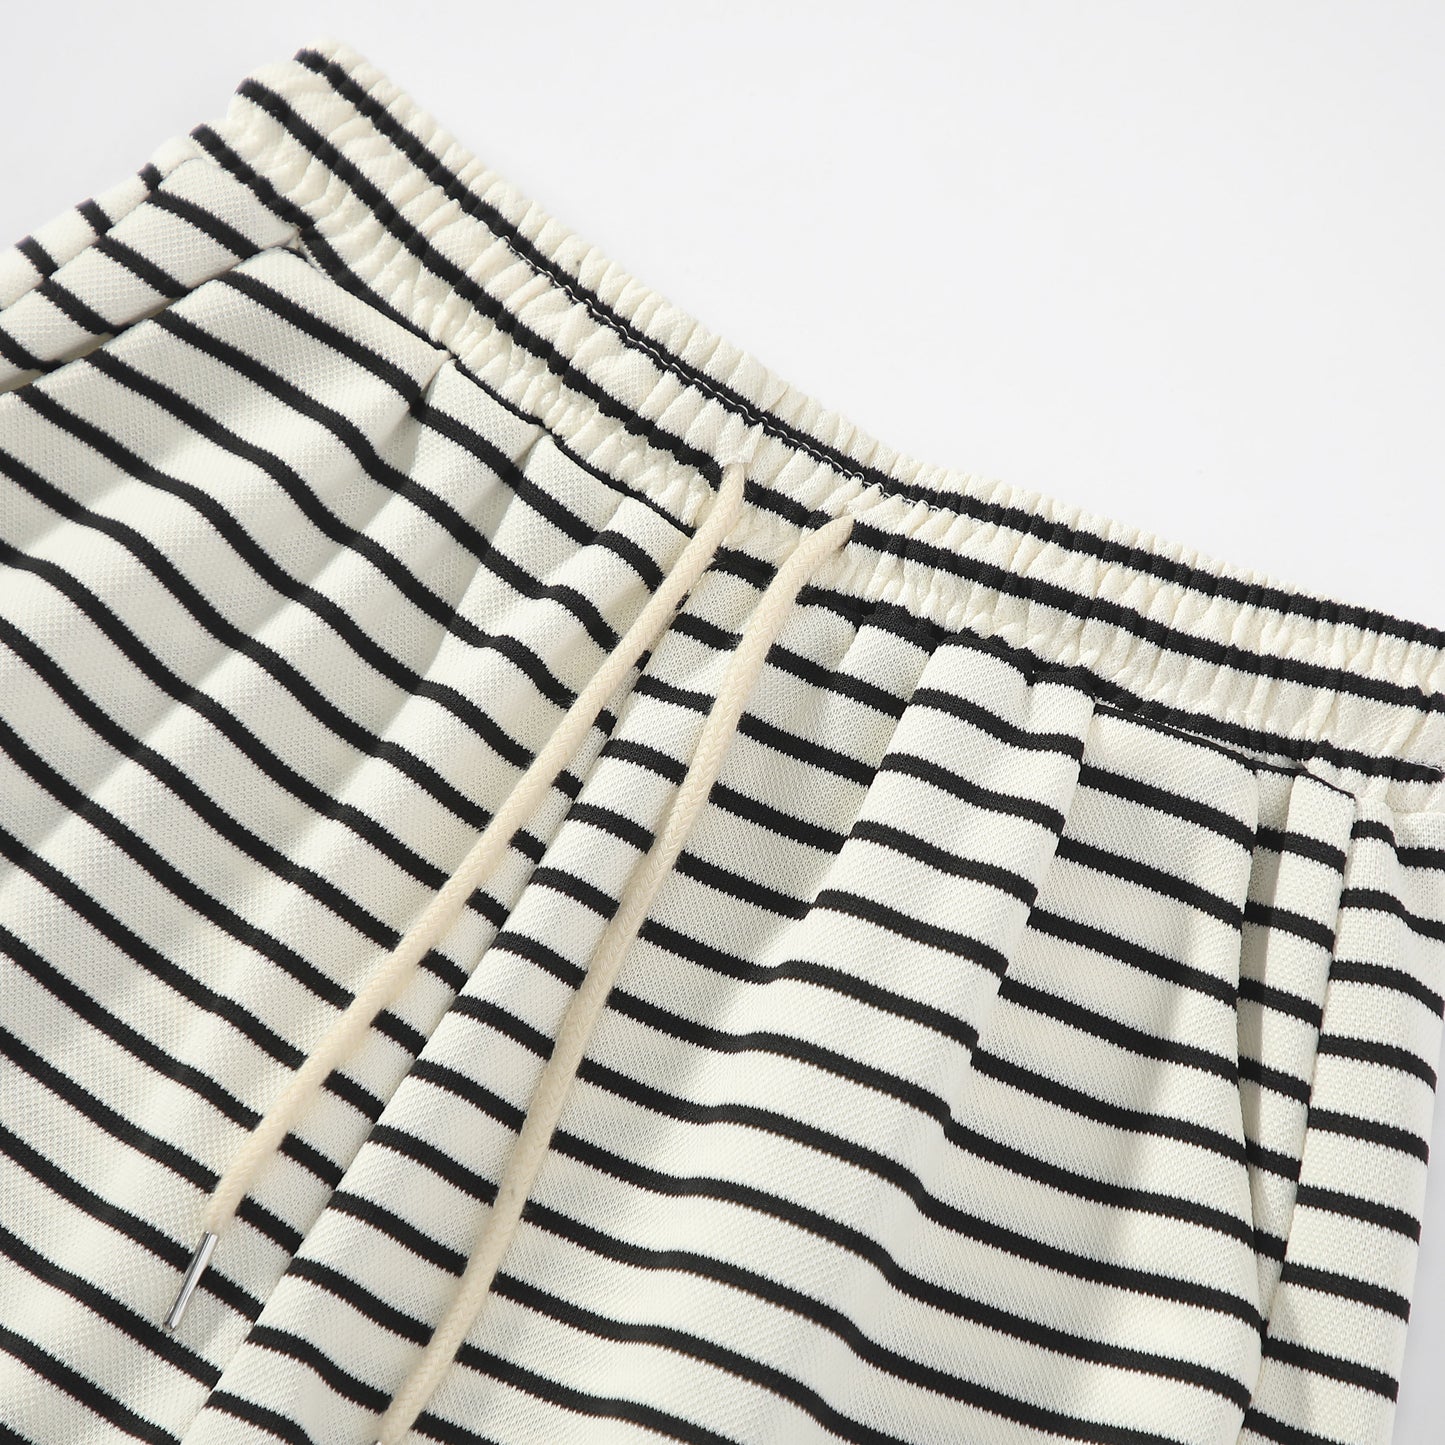 Lockere, weite Shorts mit schwarz-weißen Streifen, elastischem Bund und Kordelzug.